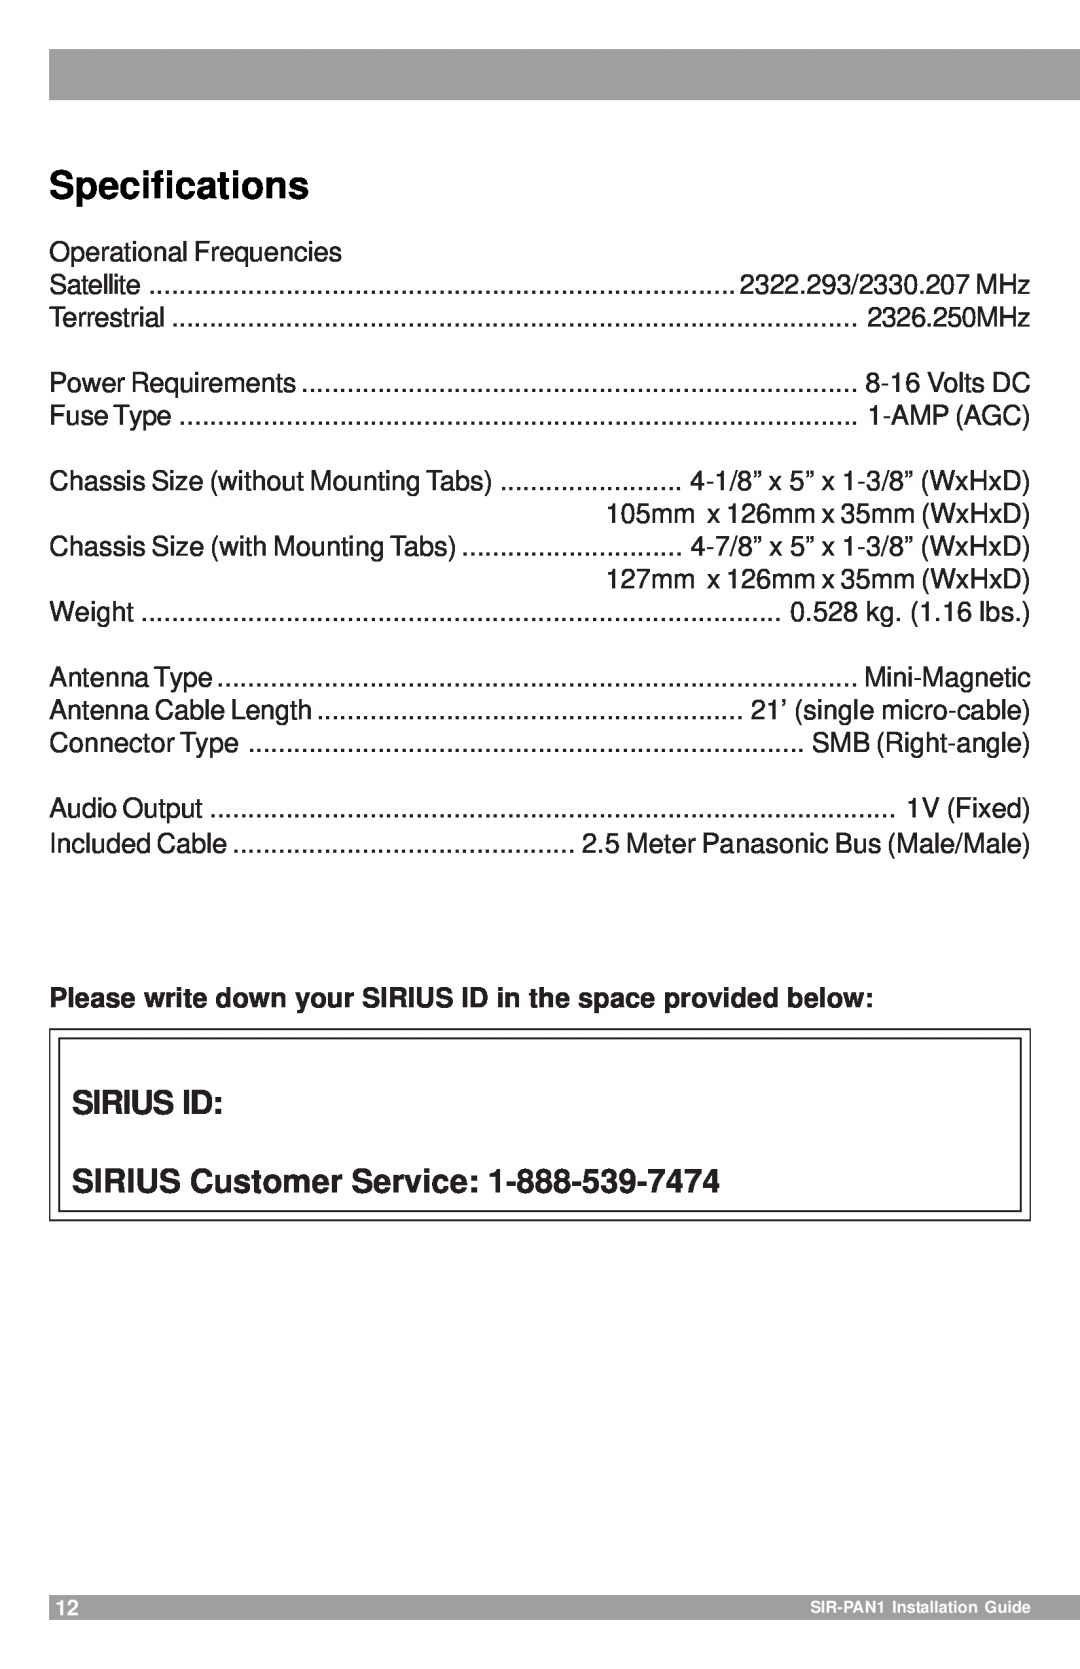 Sirius Satellite Radio SIR-PAN1 manual Specifications, SIRIUS ID SIRIUS Customer Service 